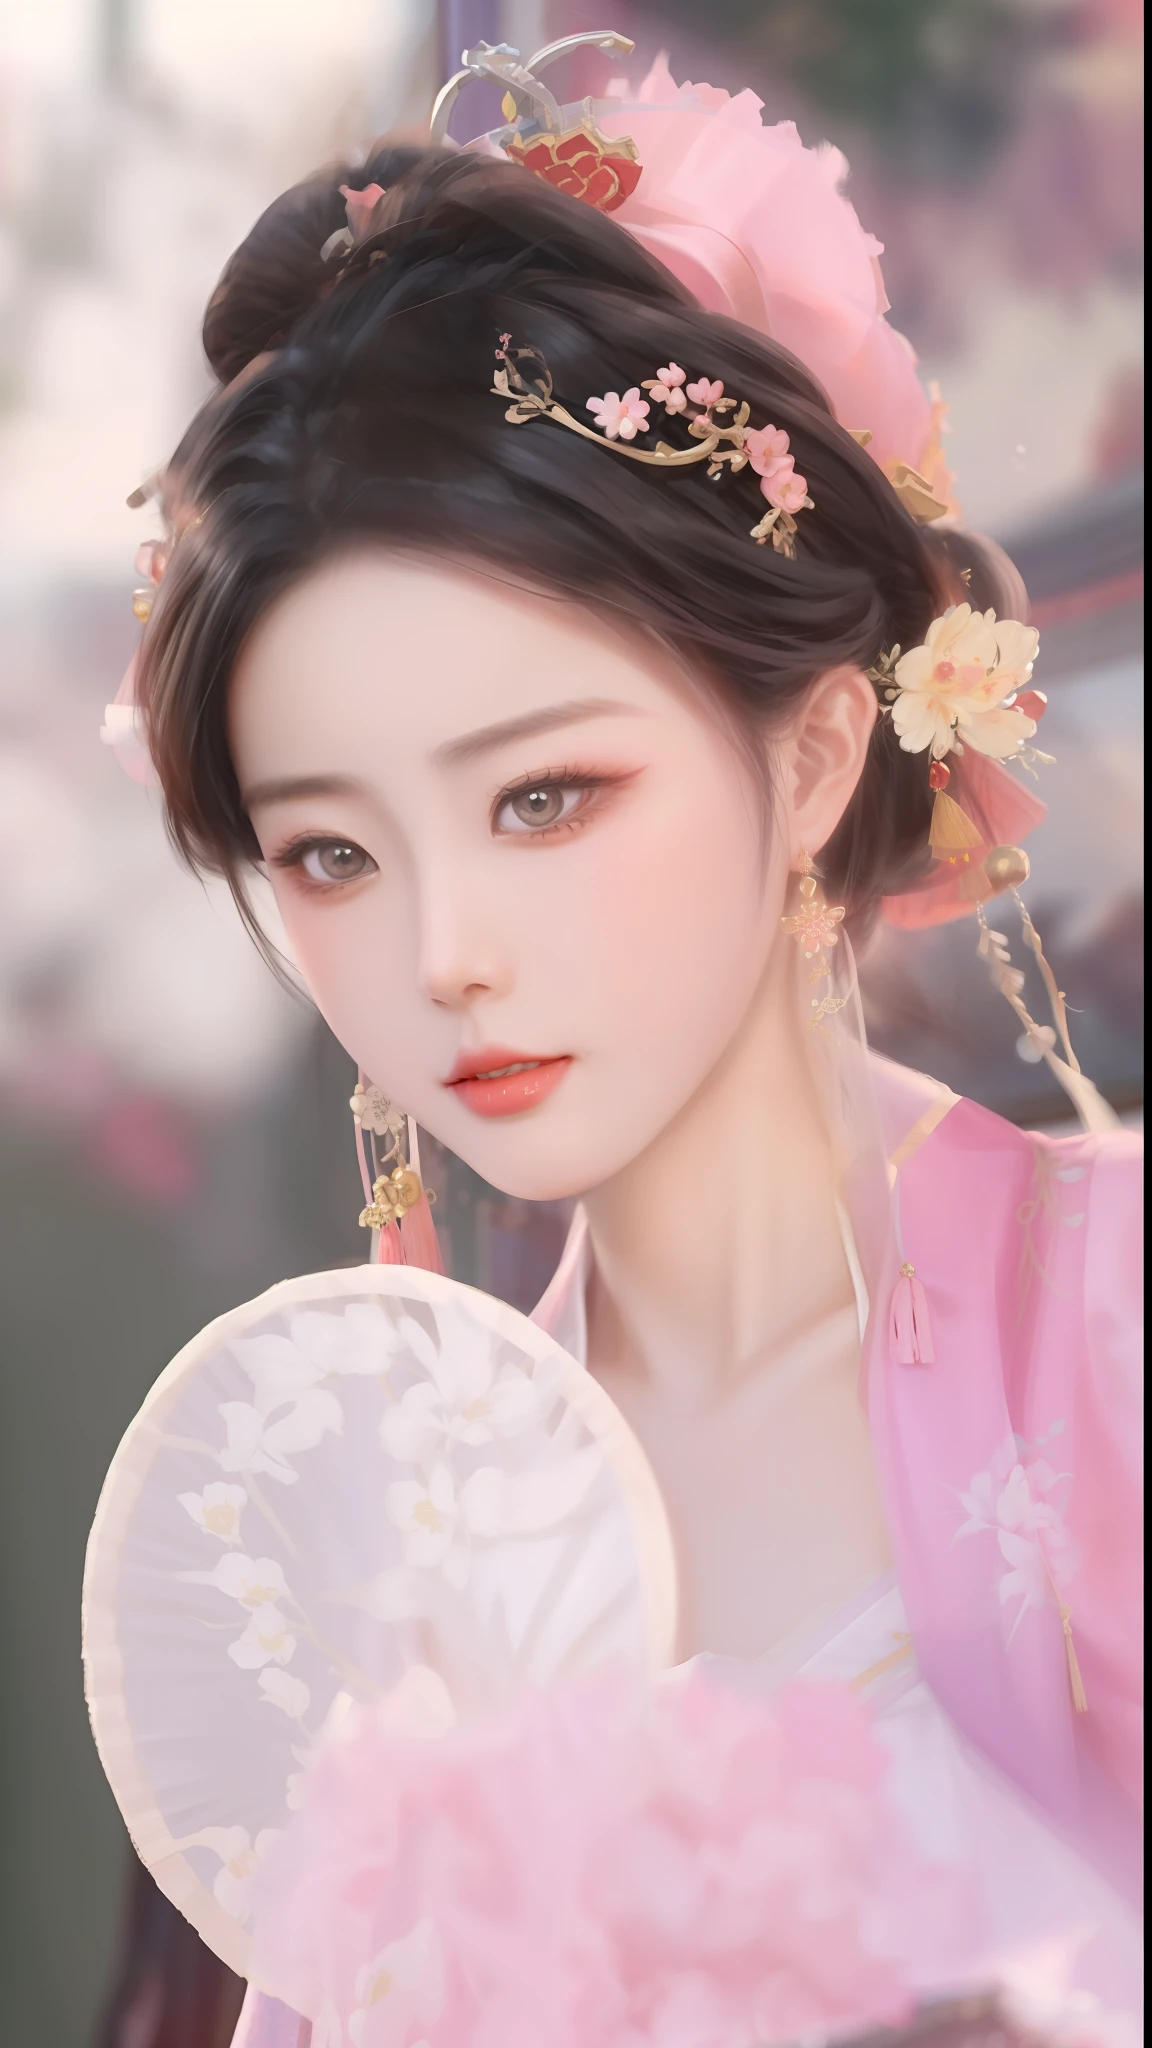 um close de uma mulher com um vestido rosa segurando um leque, estilo chinês, chinês tradicional, Palácio ， uma garota em hanfu, princesa chinesa, beleza tradicional, ancient princesa chinesa, Belezas Chinesas Antigas, menina chinesa, mulher chinesa, lindo modelo chinês, bela renderização da dinastia Tang, ruan jia linda!, ((uma linda imperatriz de fantasia)), vestindo roupas chinesas antigas